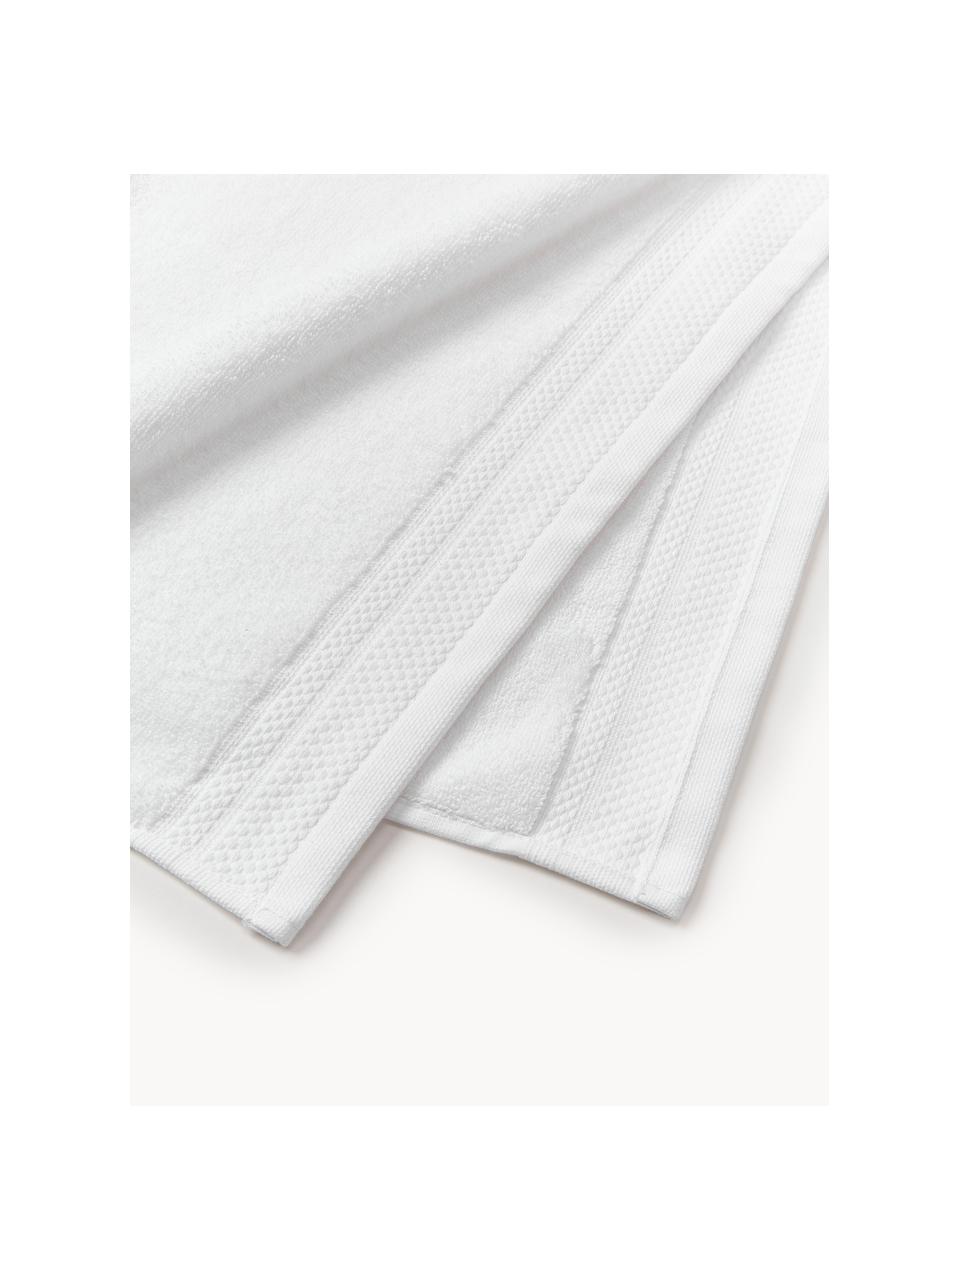 Set de toallas de algodón ecológico Premium, tamaños diferentes, 100% algodón ecológico con certificado GOTS (por GCL International, GCL-300517)
Gramaje superior 600 g/m², Blanco, Set de 4 (toallas lavabo y toallas ducha)